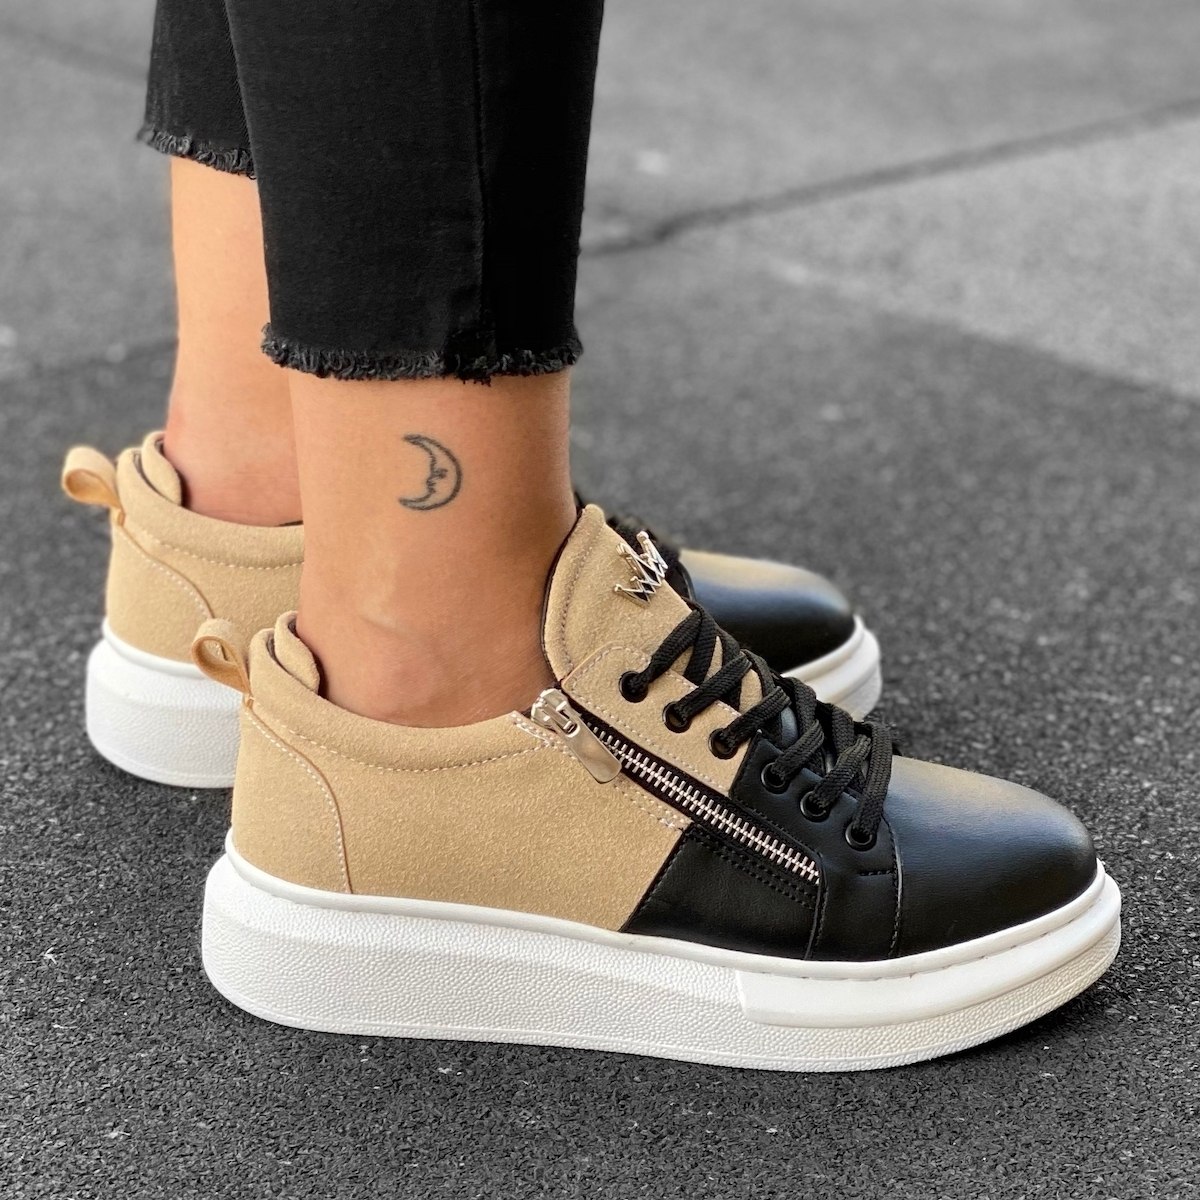 Women's Hype Sole Zipped Style Sneakers In Cream-Black